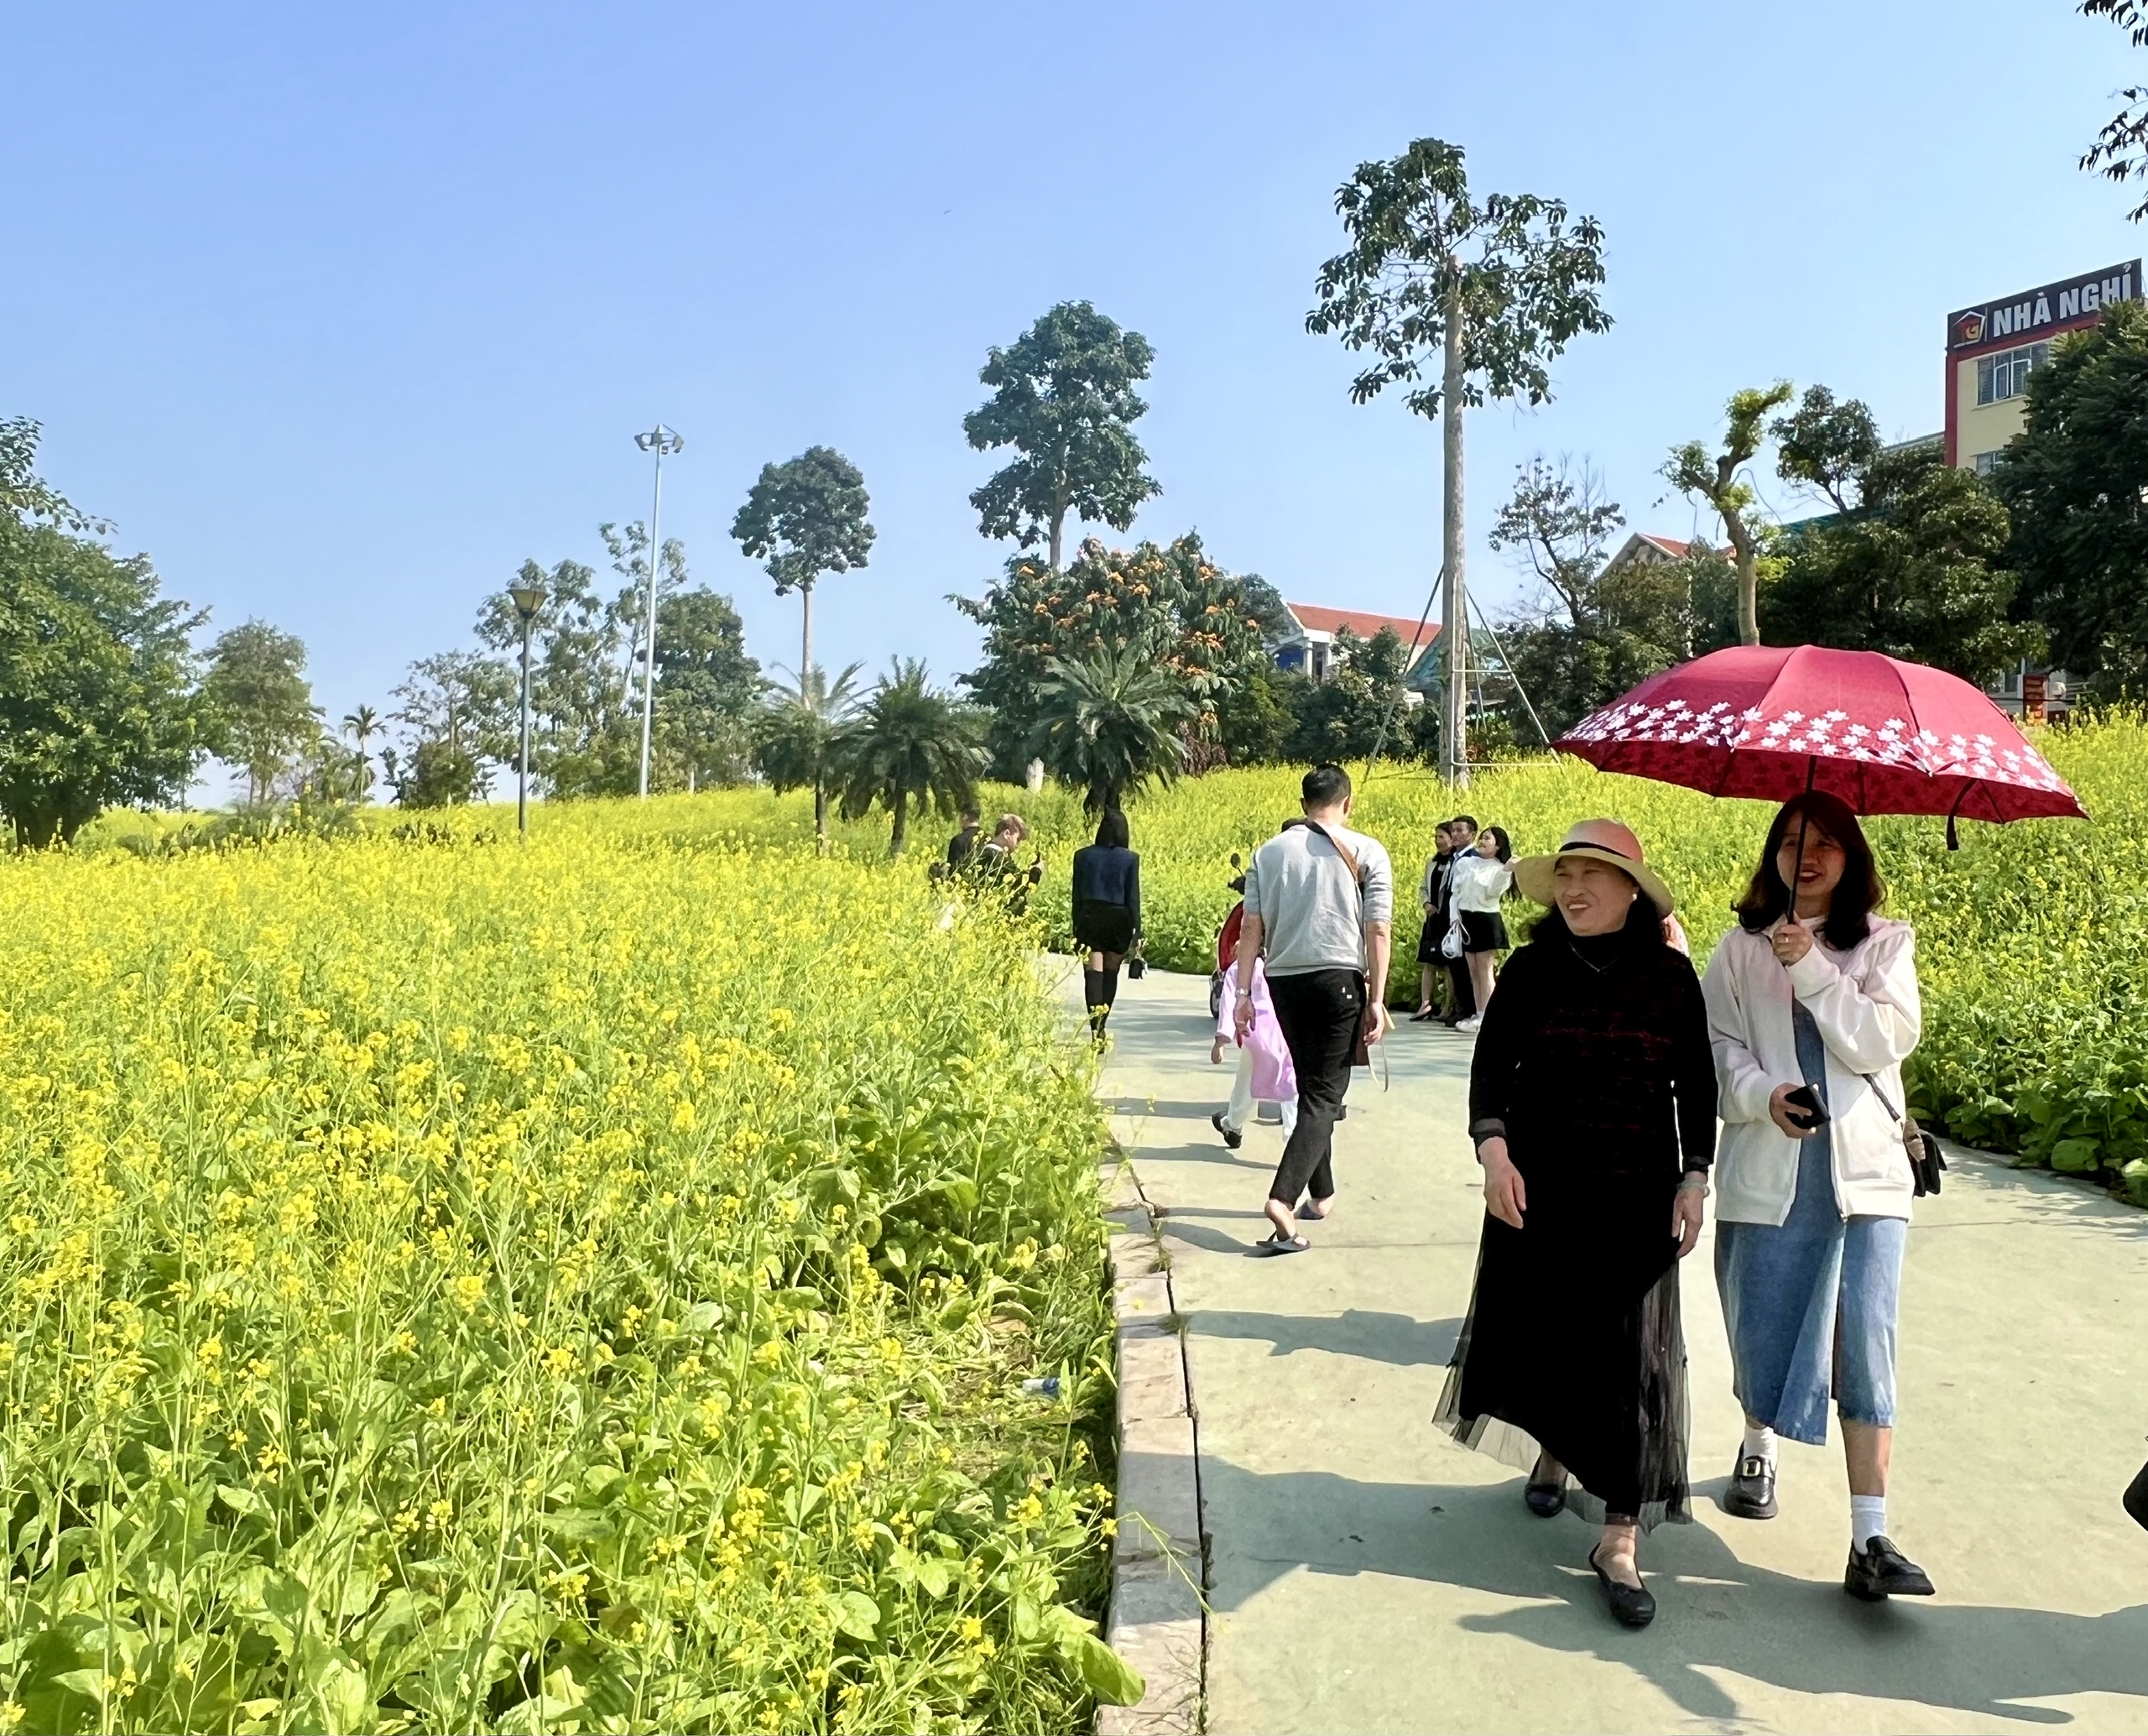 Mê mẩn vườn hoa cải vàng rực ở Phú Thọ, khách check-in quên lối về- Ảnh 1.